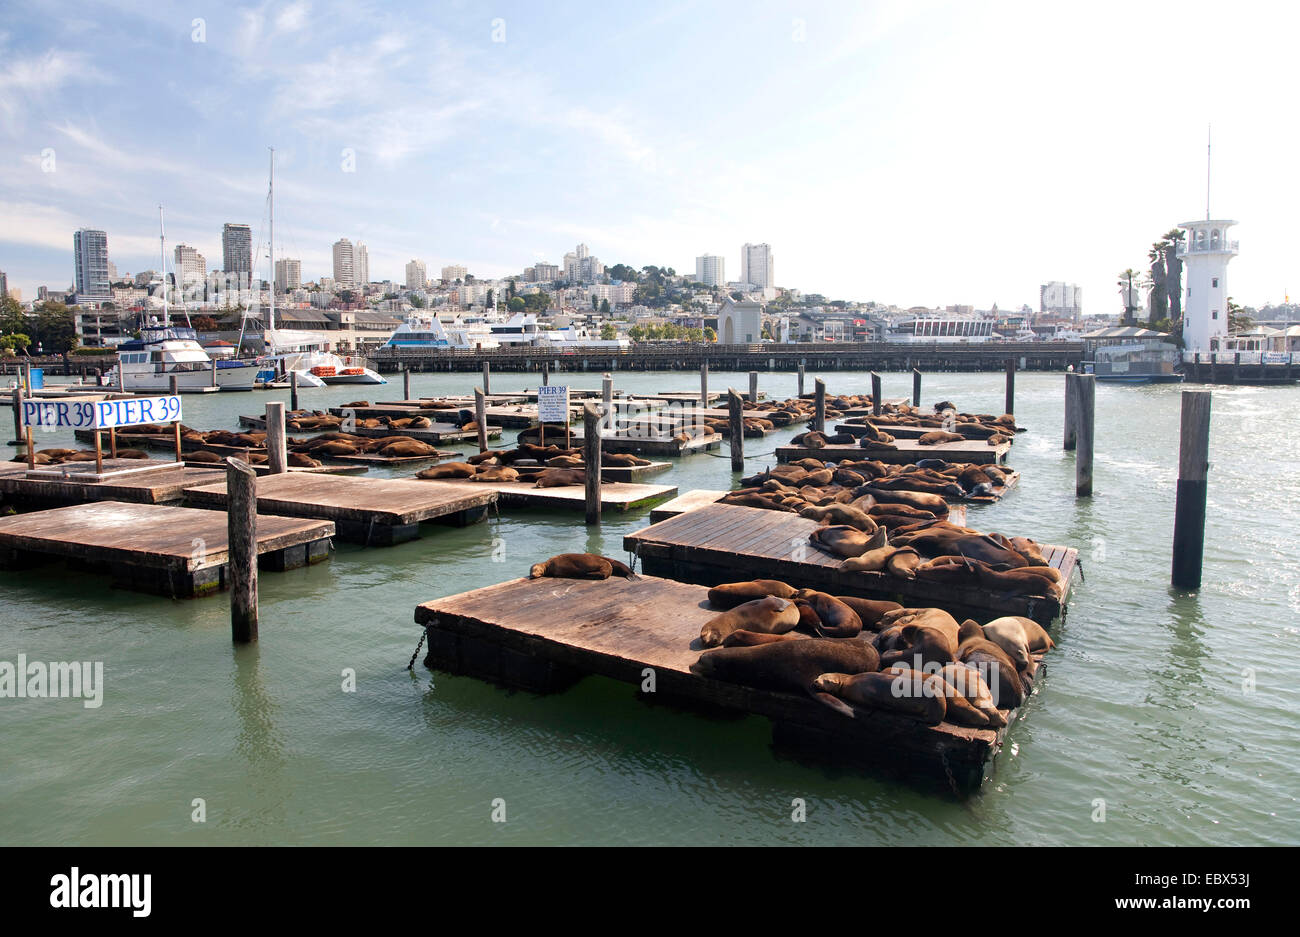 Lion de mer de Californie (Zalophus californianus), bains de soleil sur Pier 29 à San Francisco, USA, Californie, Fisherman's Wharf, San Francisco Banque D'Images